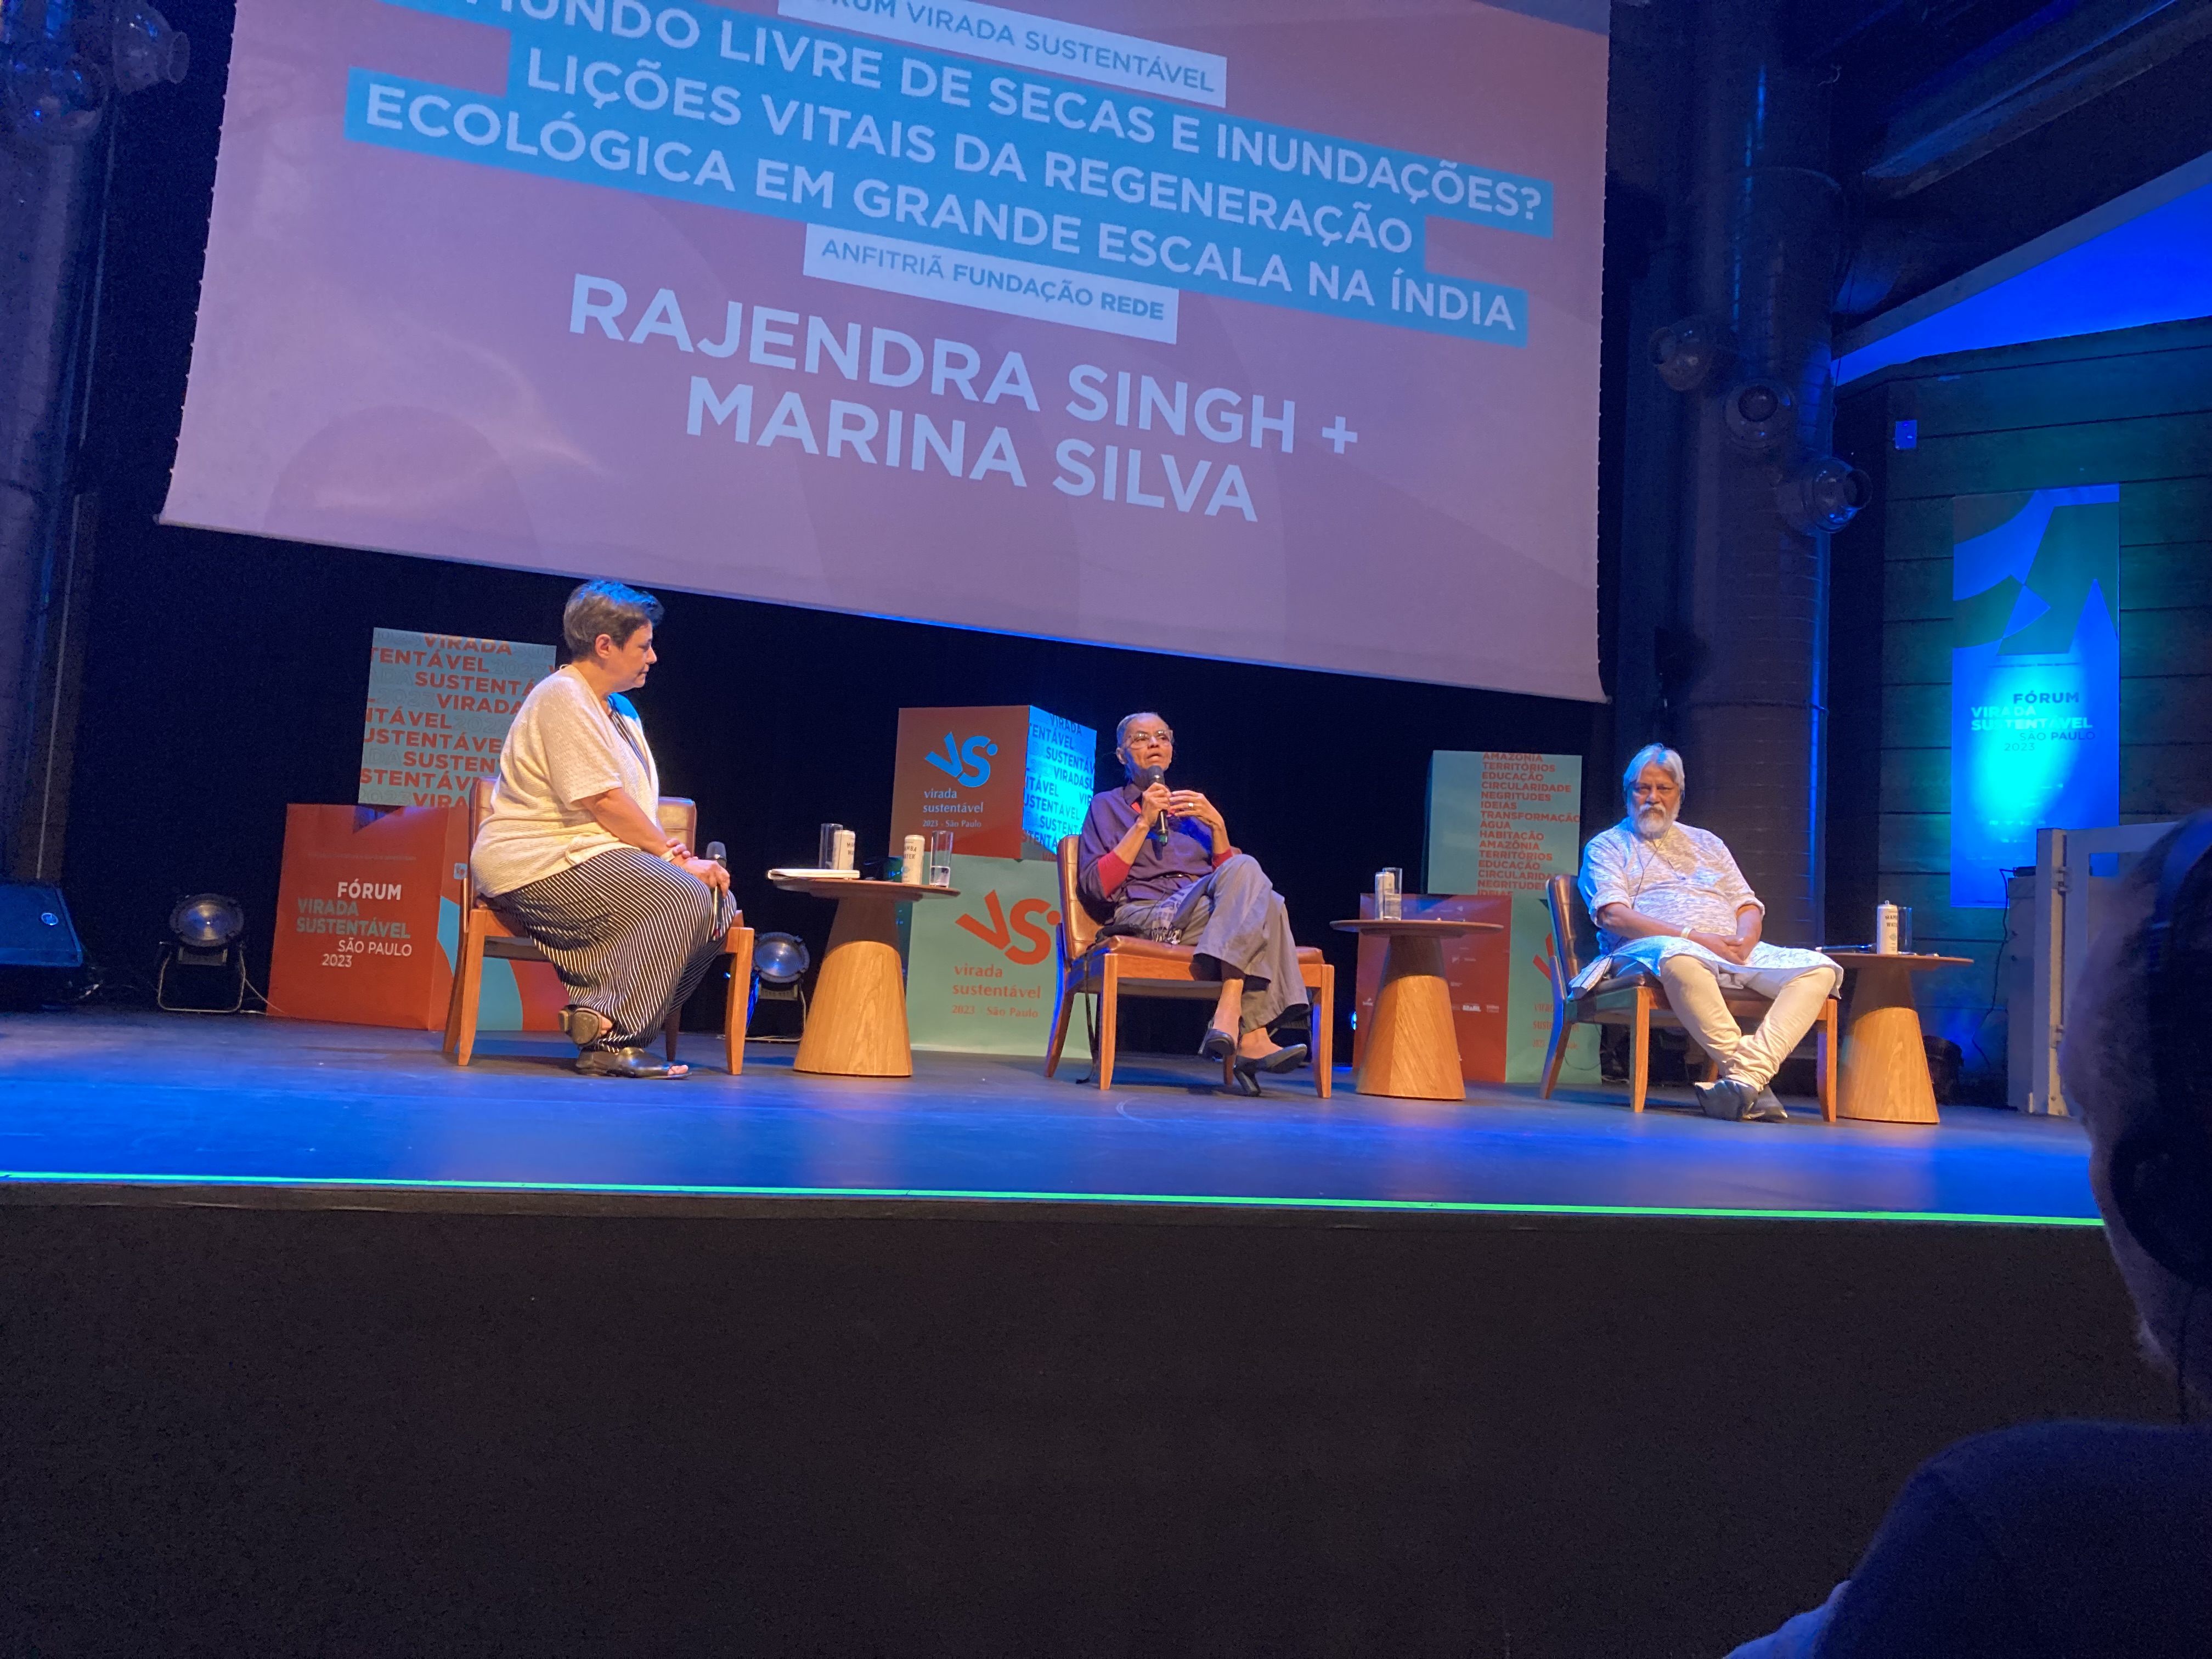 Marussia Whately, diretora-executiva do IAS, media mesa com Marina Silva, ministra do Meio Ambiente e Mudanças Climáticas, e Rajendra Singh, o 'homem da água da Índia' / Divulgação IAS